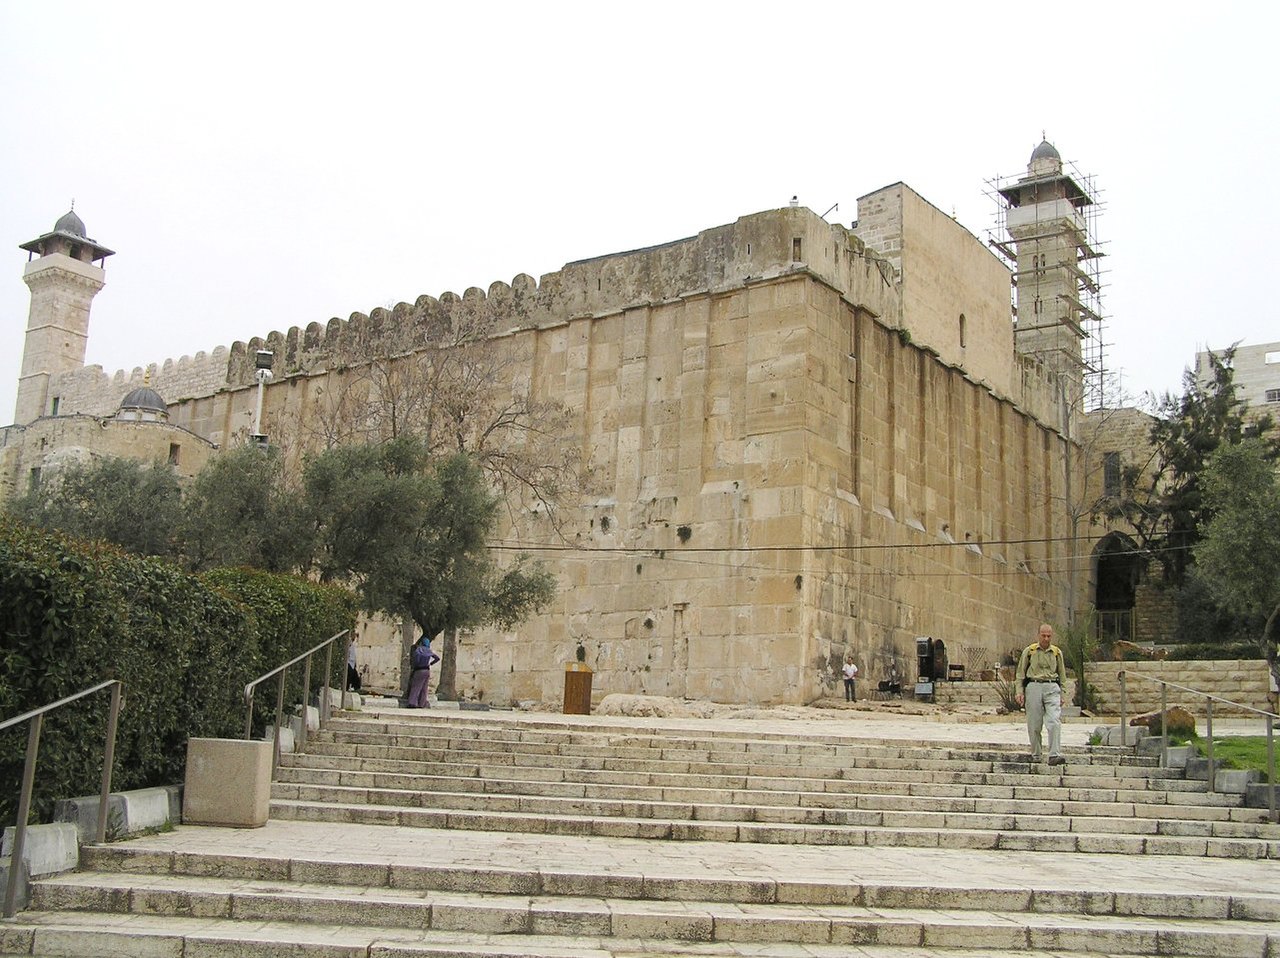  الحرم الابراهيمي (ويكيبيديا)